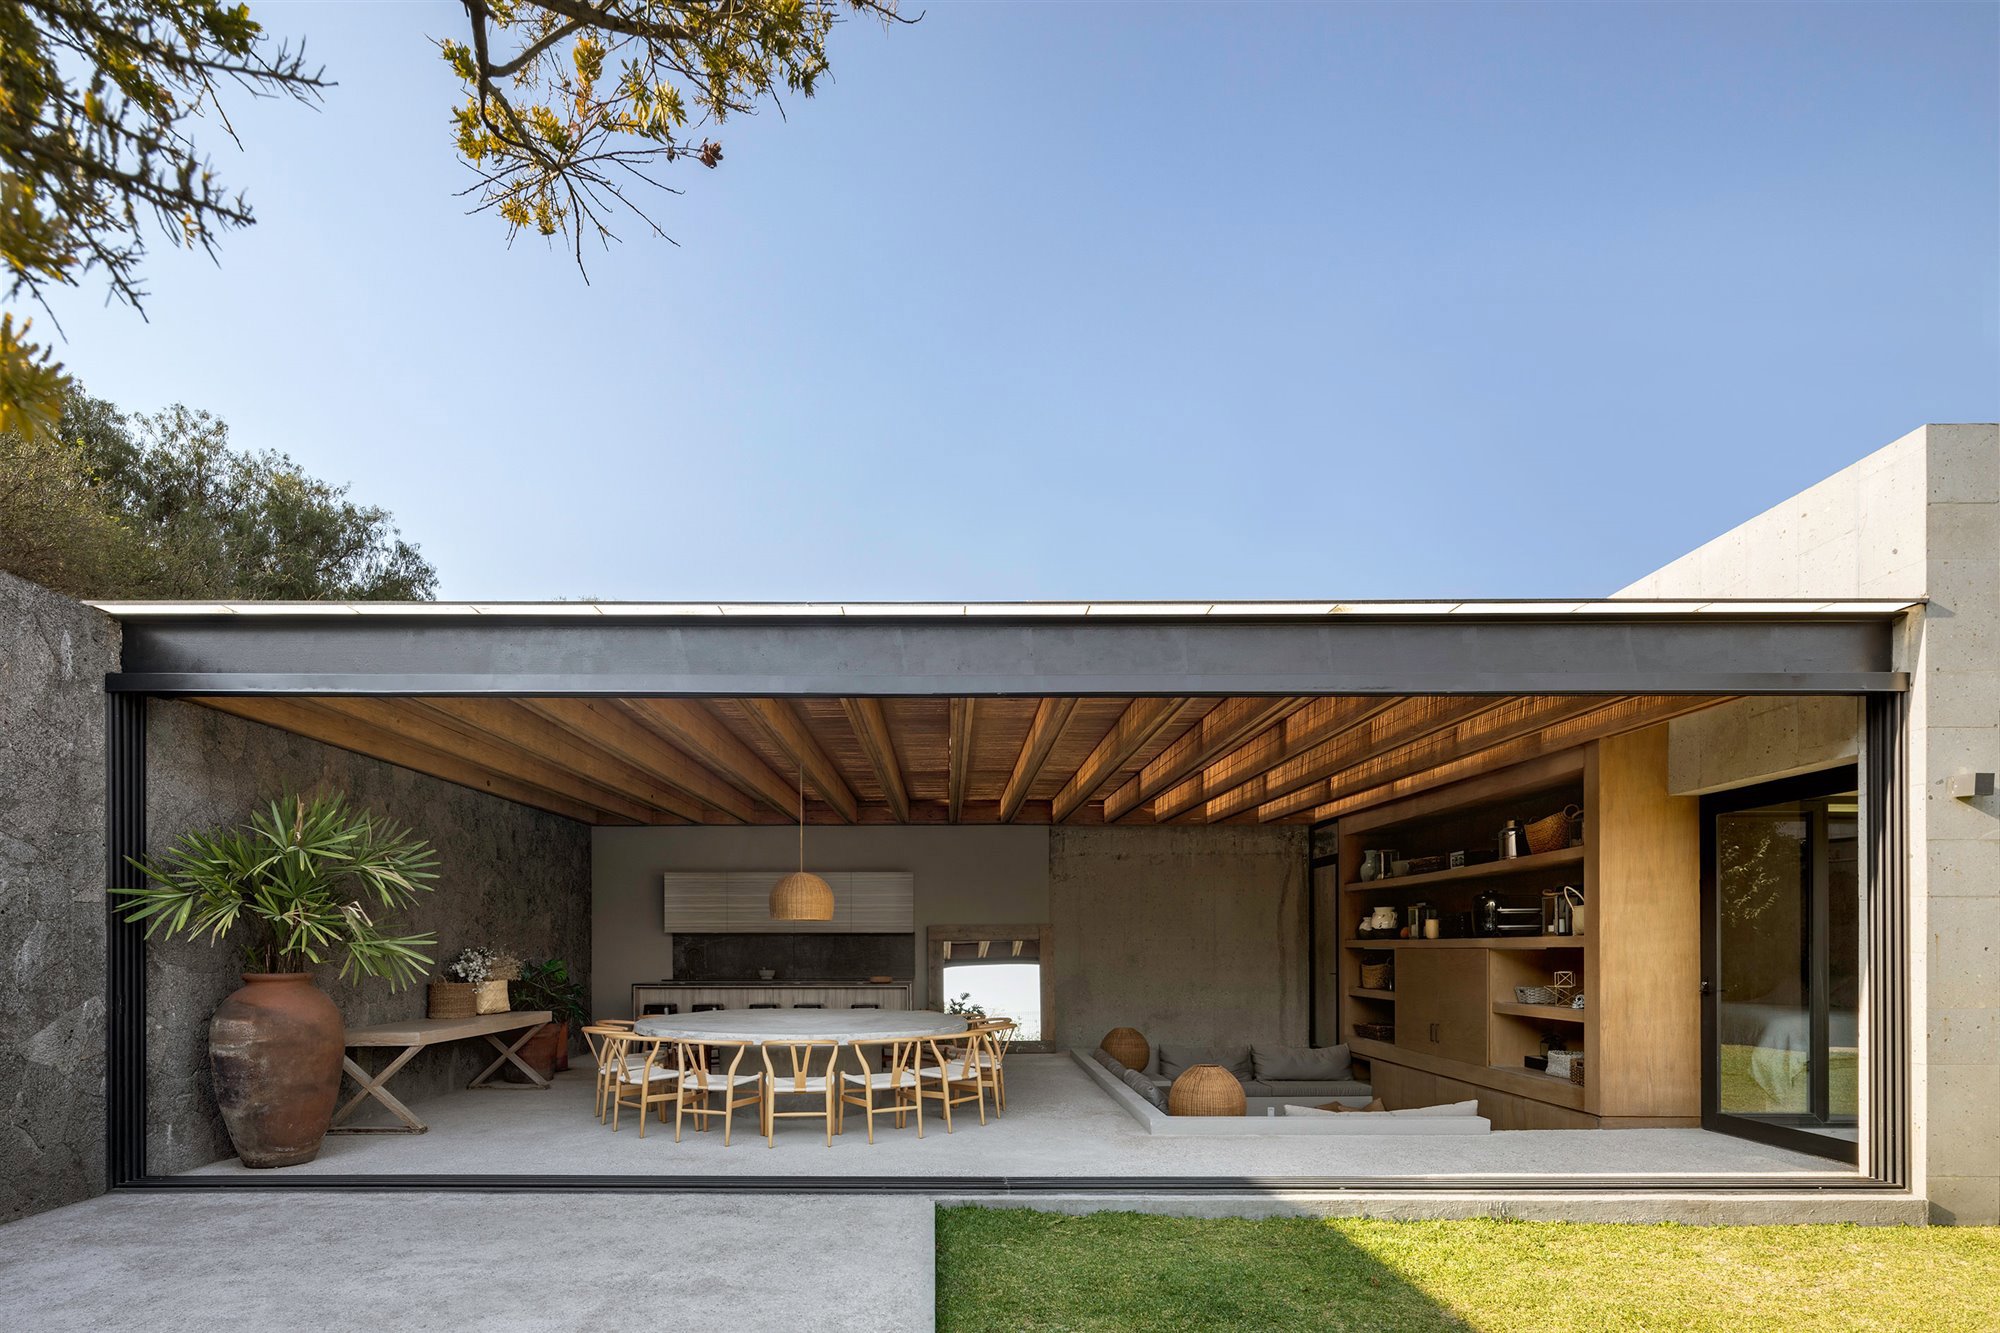 Casa en mexico con techos de madera porche